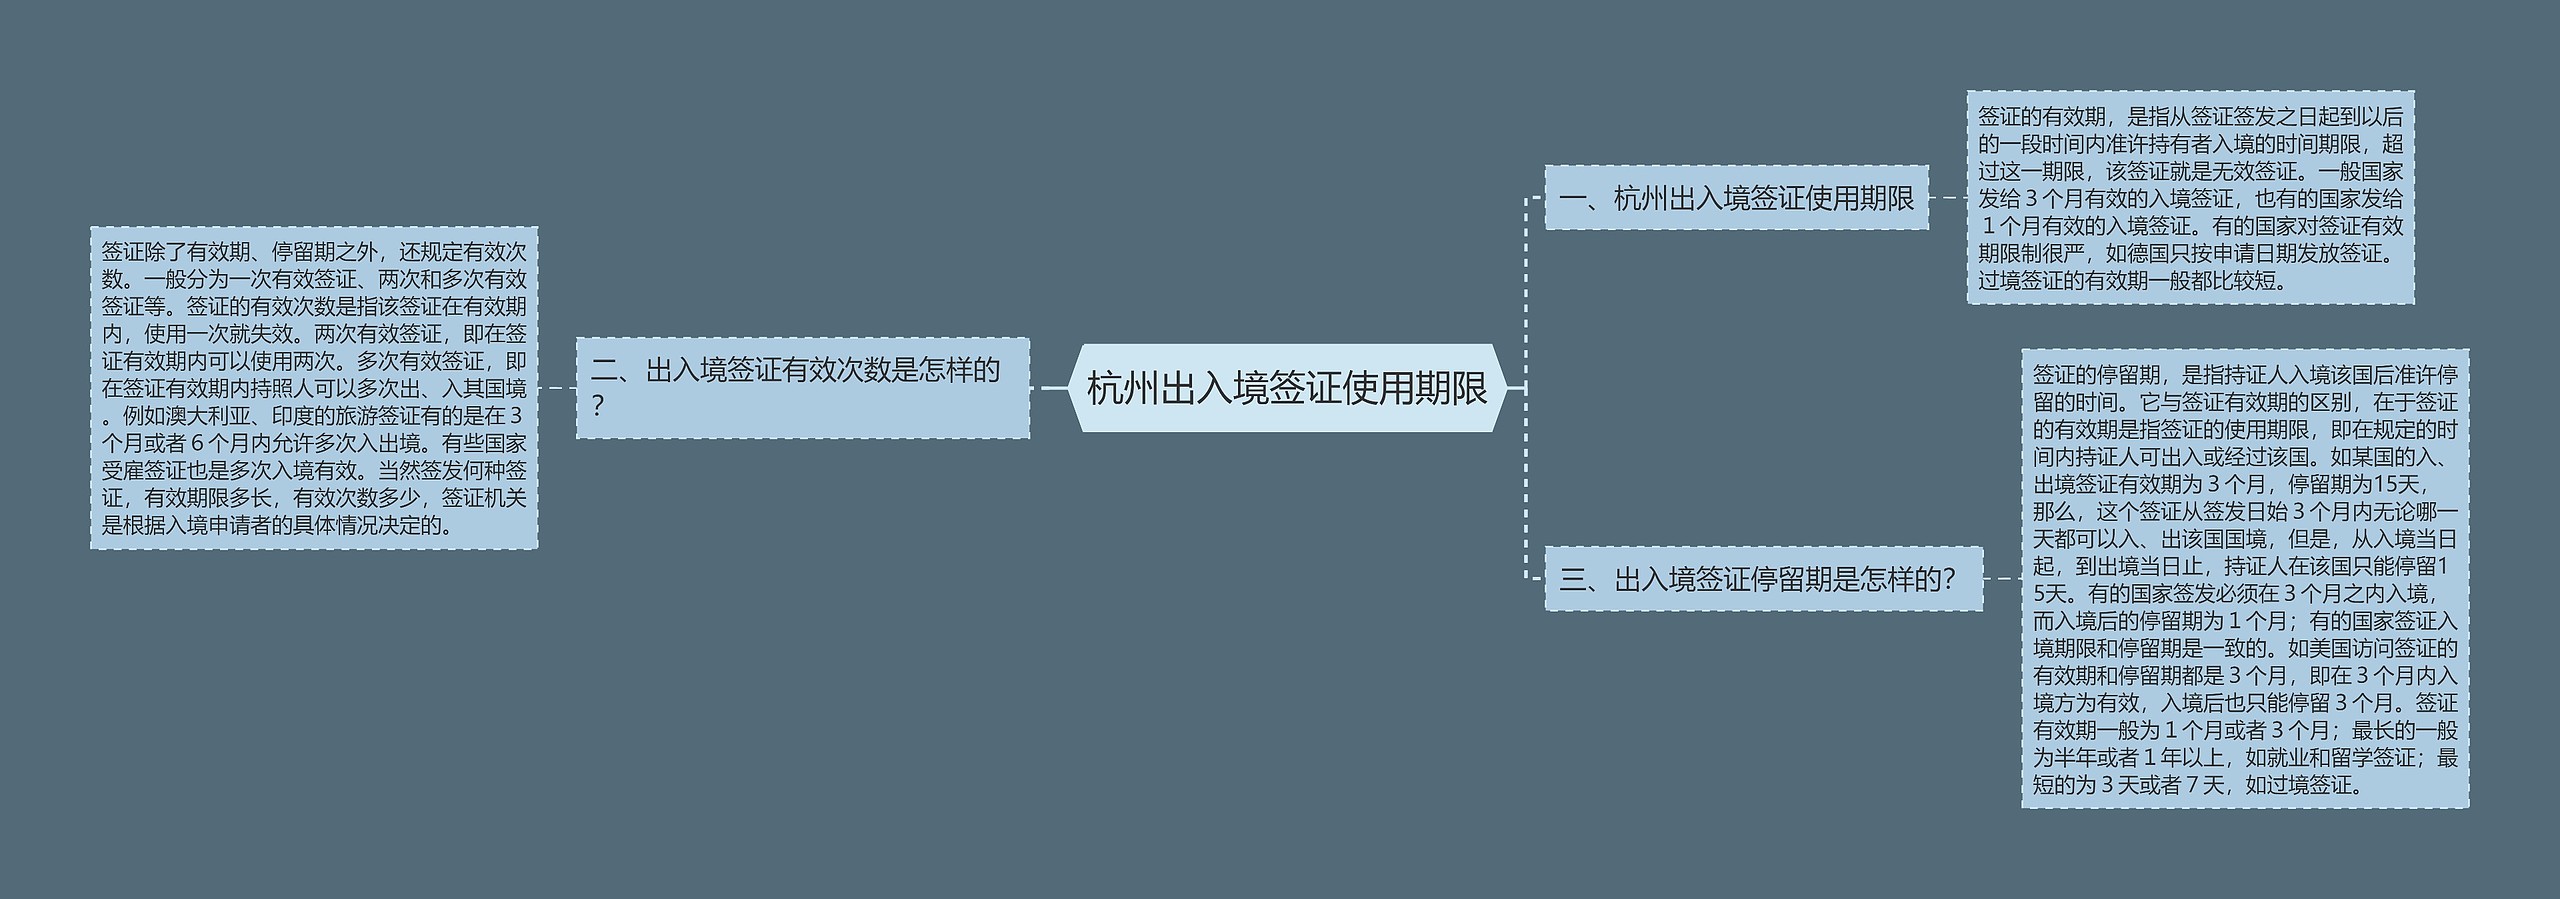 杭州出入境签证使用期限思维导图